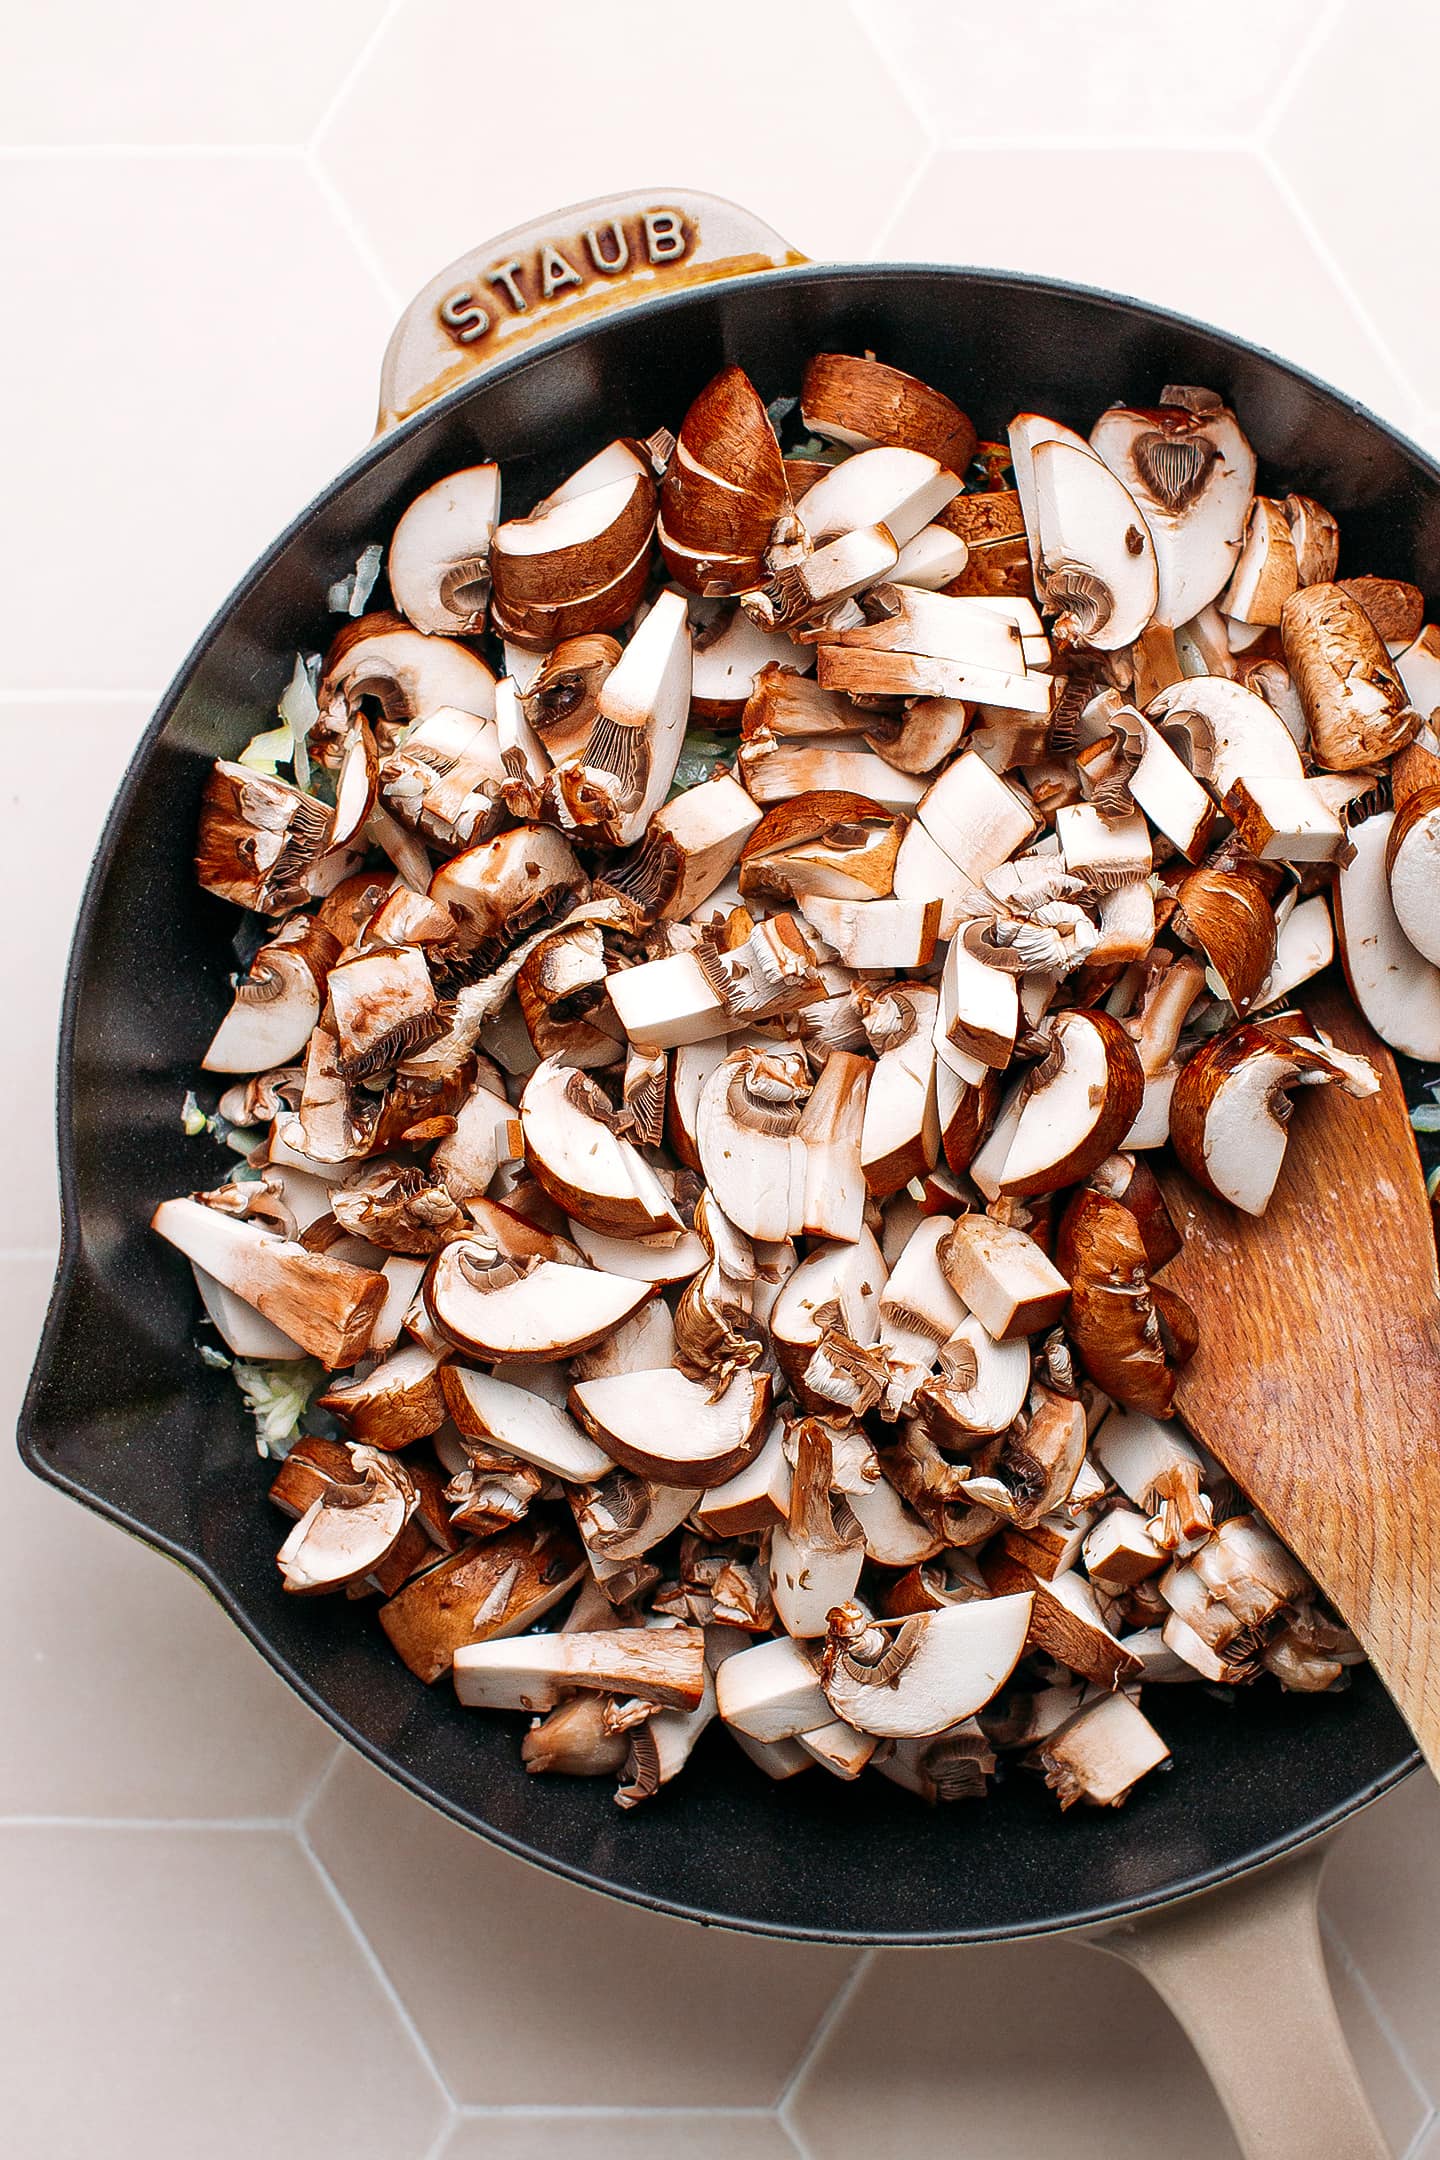 Diced mushrooms in a skillet.